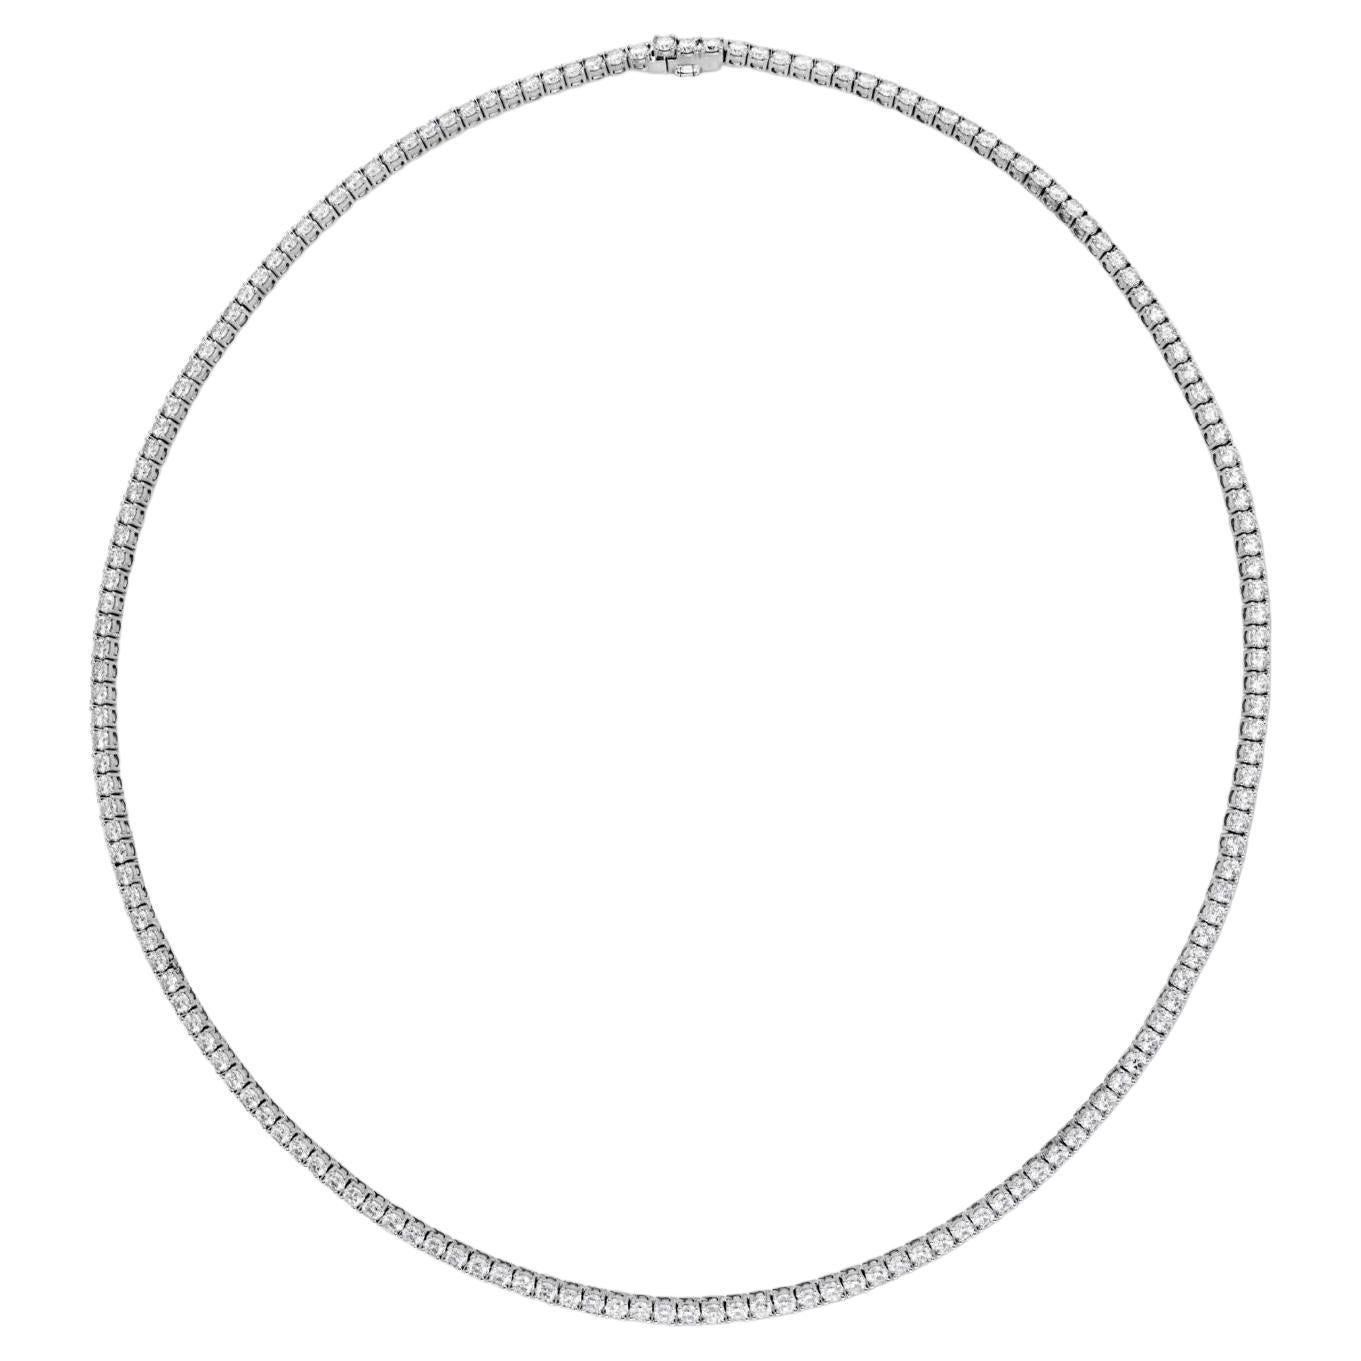 Memoire Kollektion Uniform 4 Zacken Linie 5,14 Karat Diamant-Halskette in 18 Karat Whit